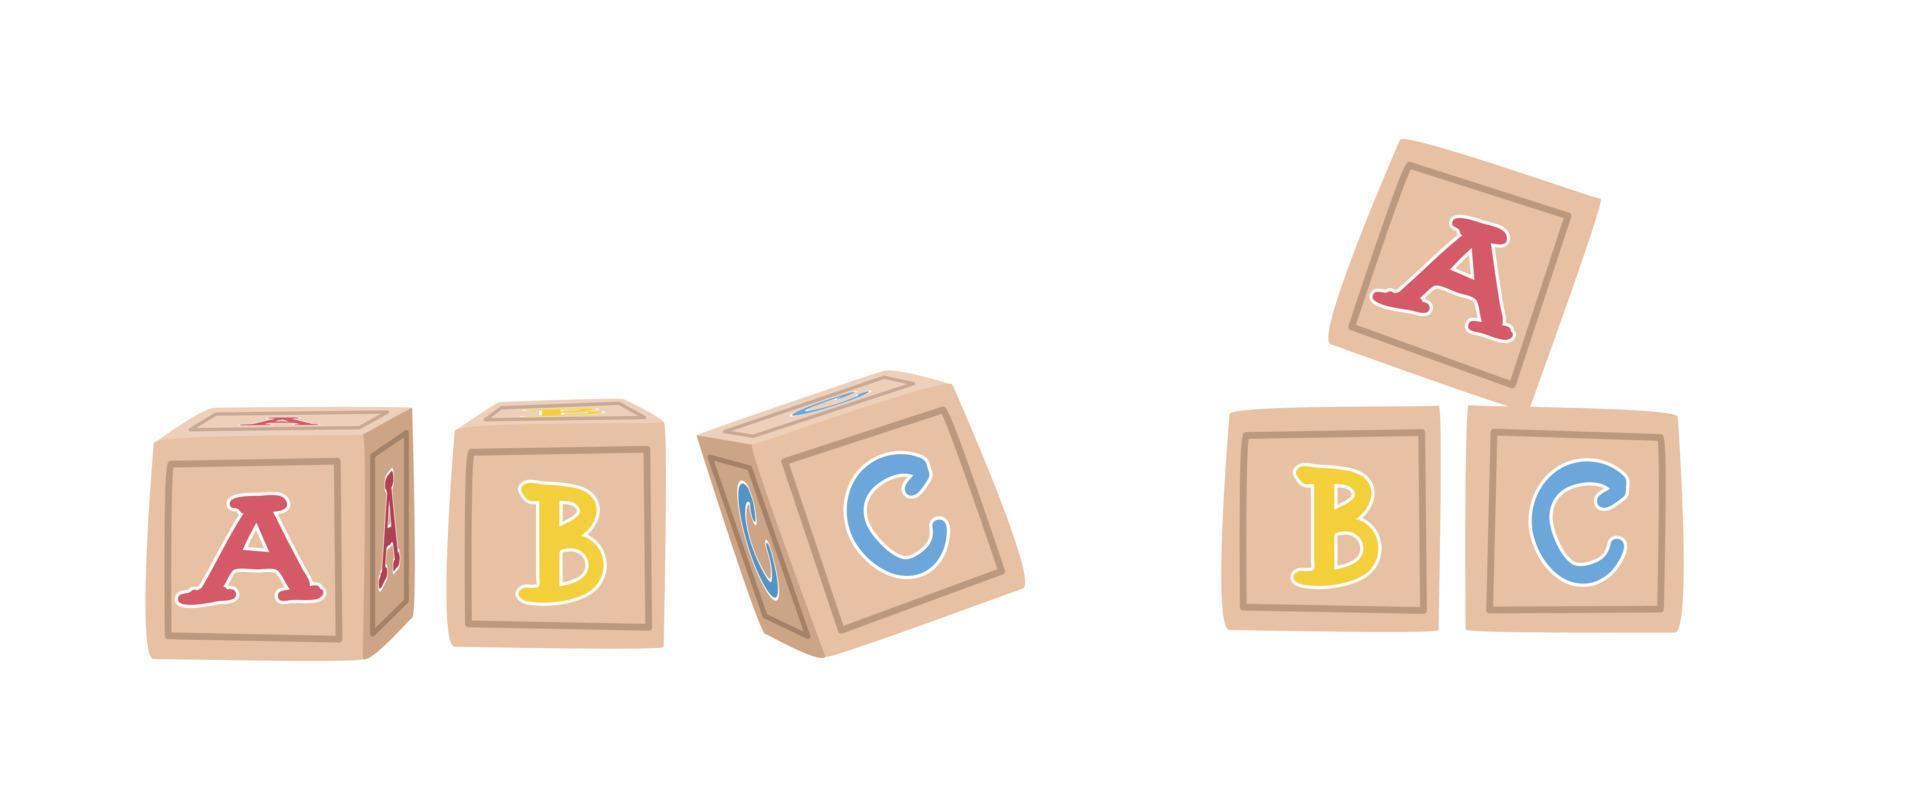 clipart de blocos de letras de madeira de brinquedo de bebê. blocos de alfabeto bonito simples que soletram ilustração vetorial plana abc isolada. bebê bloqueia clipart de estilo de desenho animado. vetor de blocos abc. crianças, conceito de chá de bebê